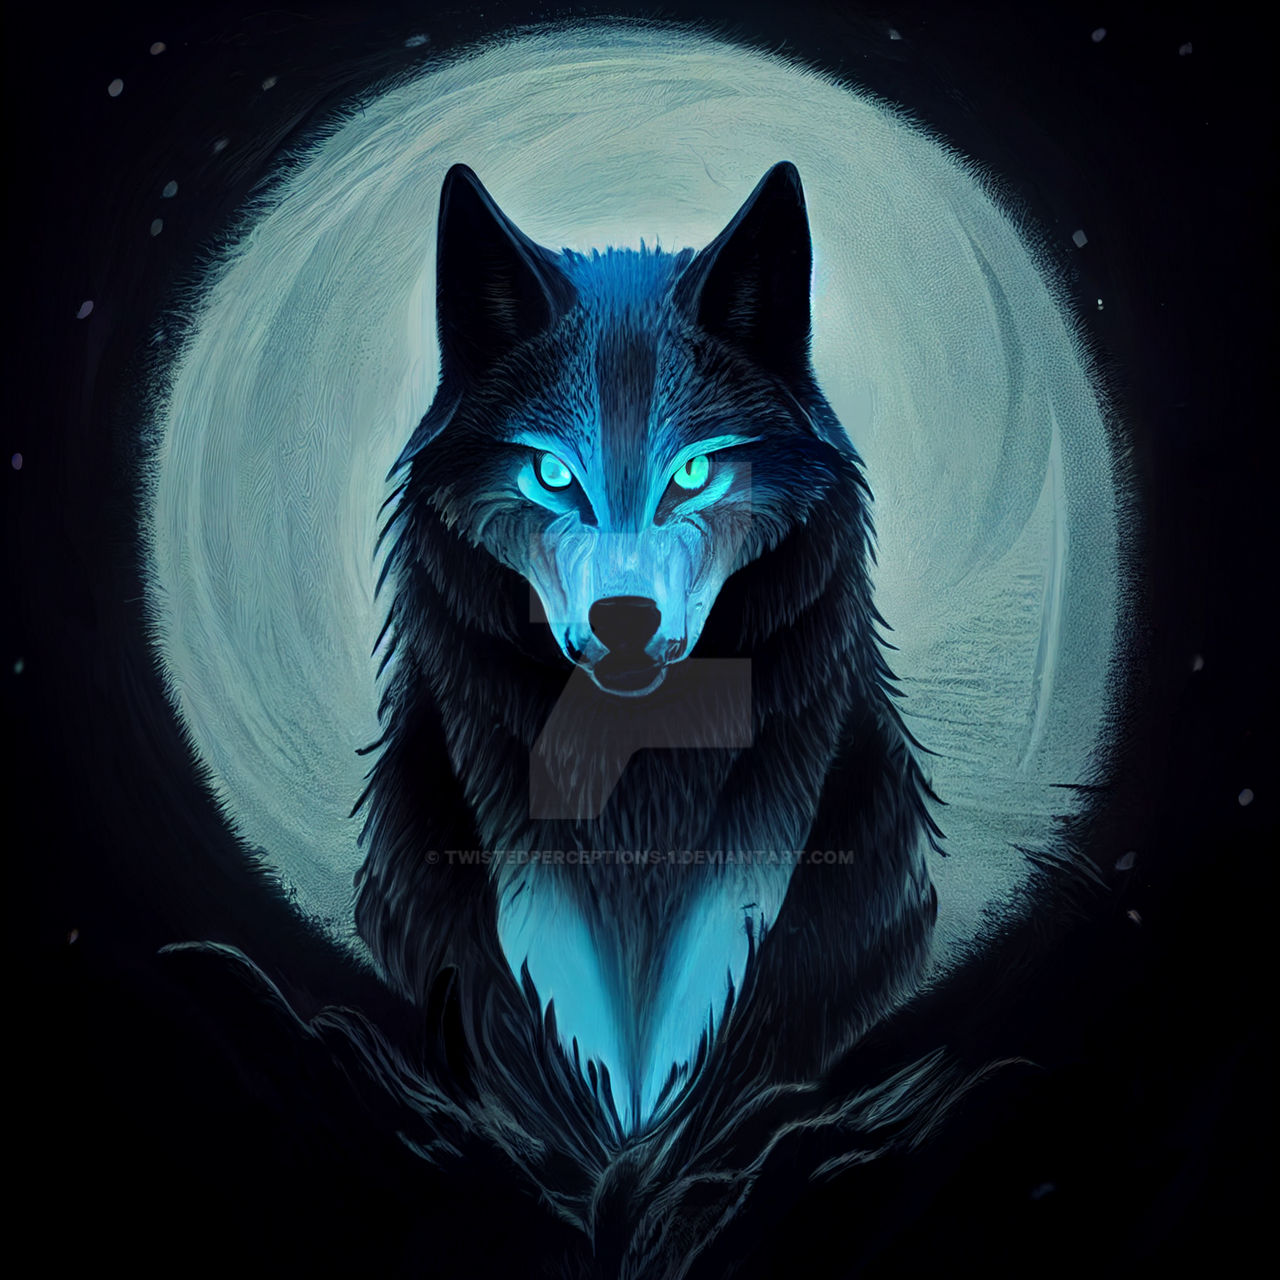 Spectral Night Wolf by TwistedPerceptions-1 on DeviantArt